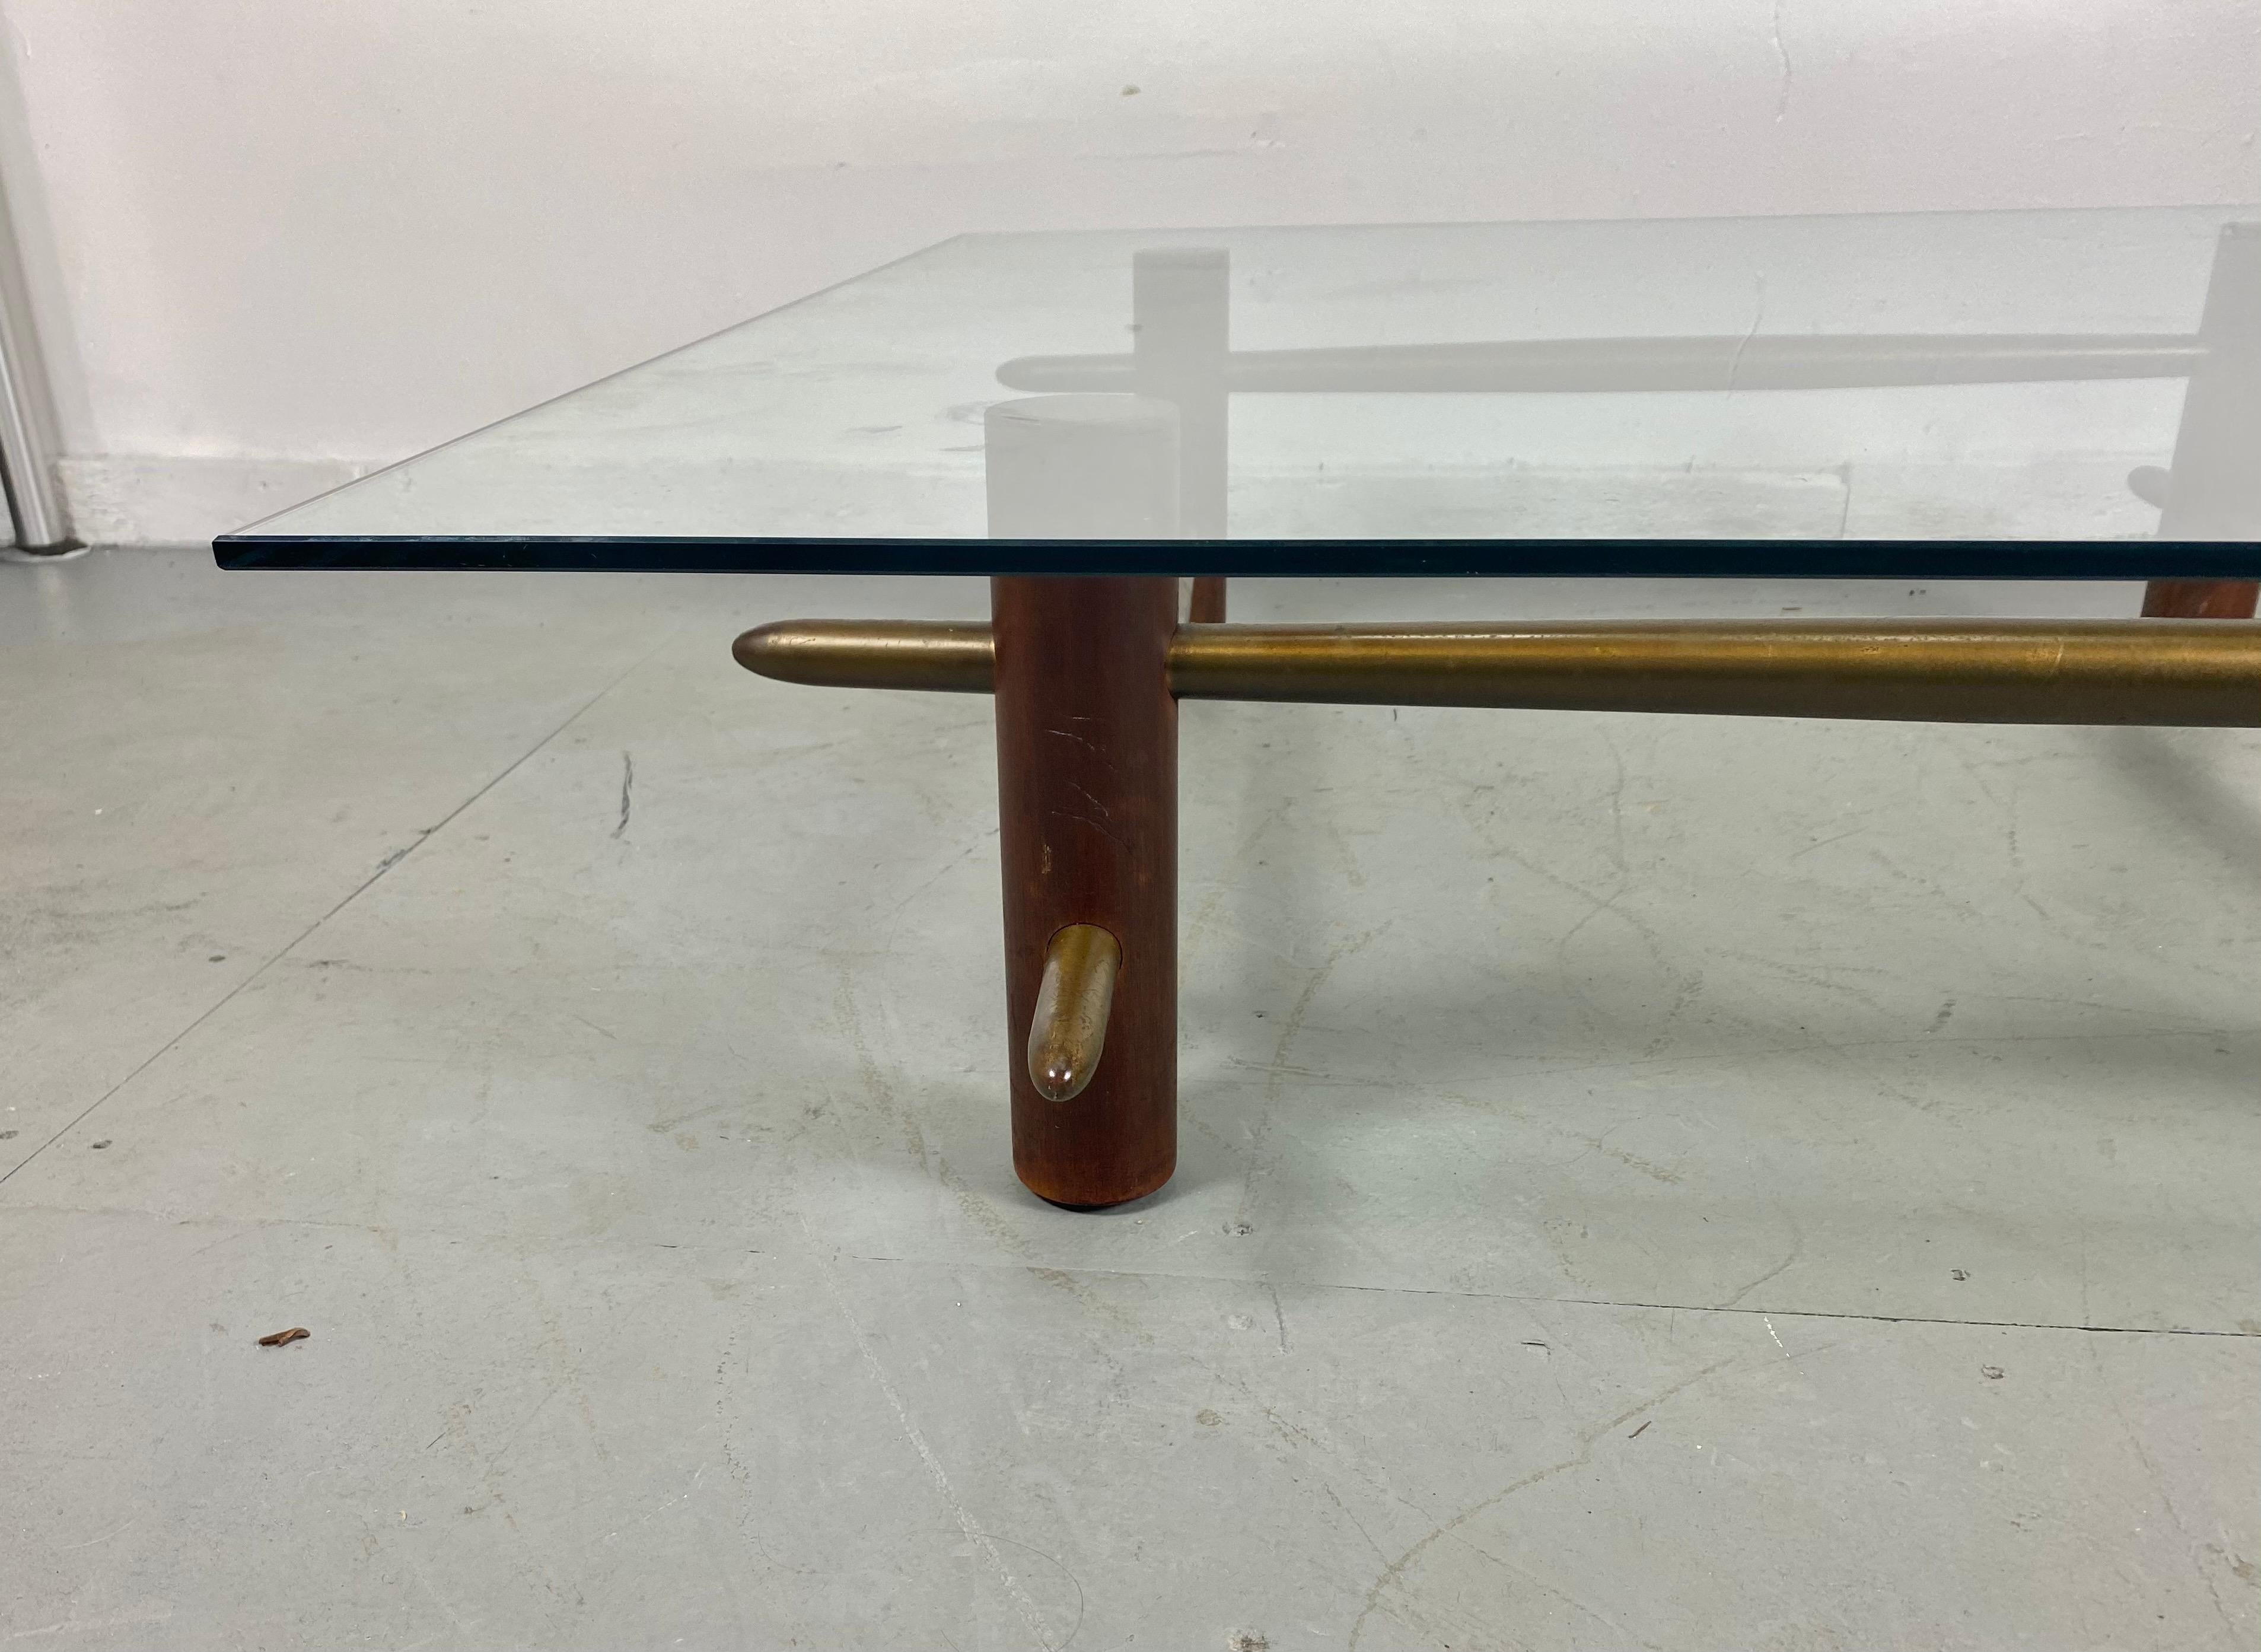 Rare, ancienne et importante, table basse conçue par Robsjohn Gibbings pour Widdicomb 1952, modèle 1640. La base est constituée de piliers en acajou massif pénétrés par des barres en laiton massif. La base conserve sa finition originale / patine.